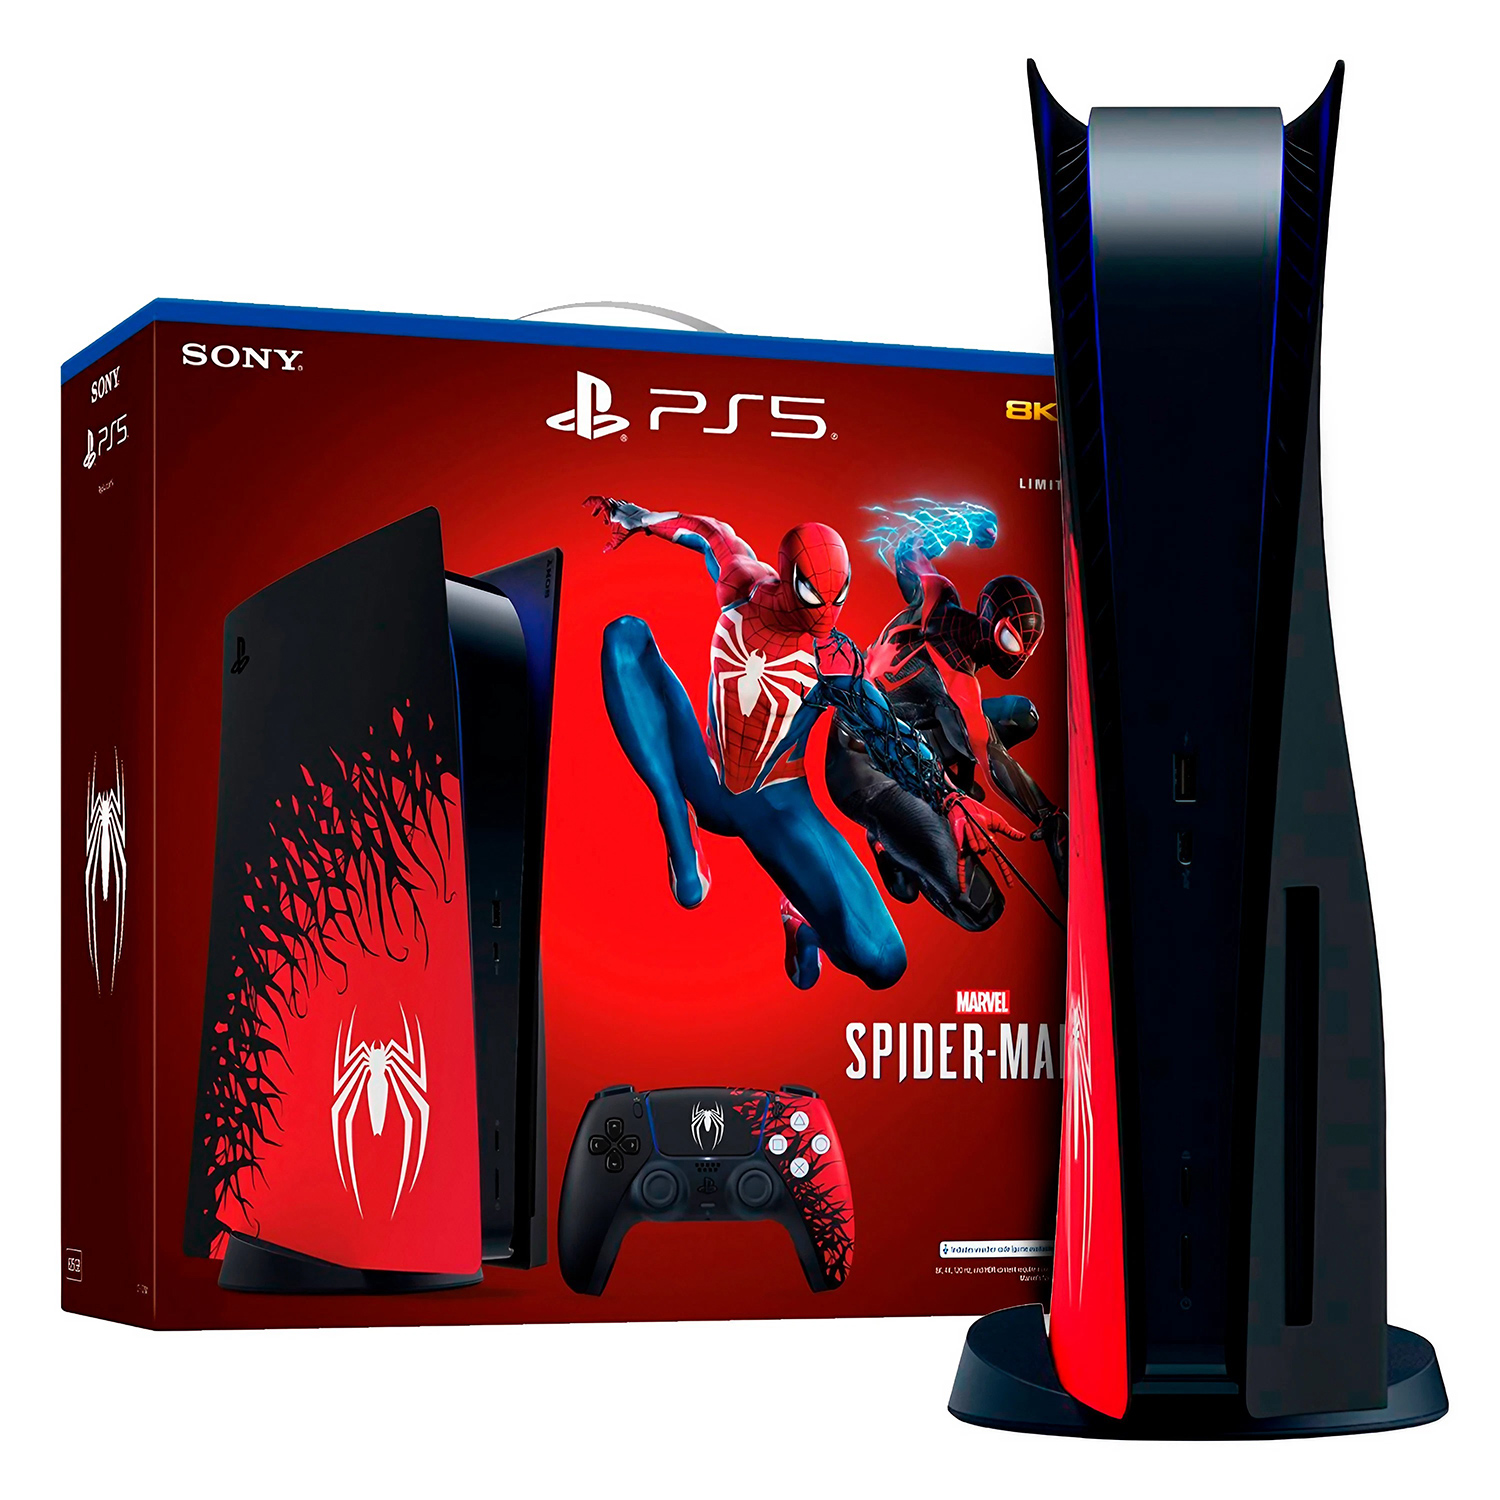 BH GAMES - A Mais Completa Loja de Games de Belo Horizonte - Controle  DualSense Playstation 5 - Edição Limitada Spider Man 2 - PS5